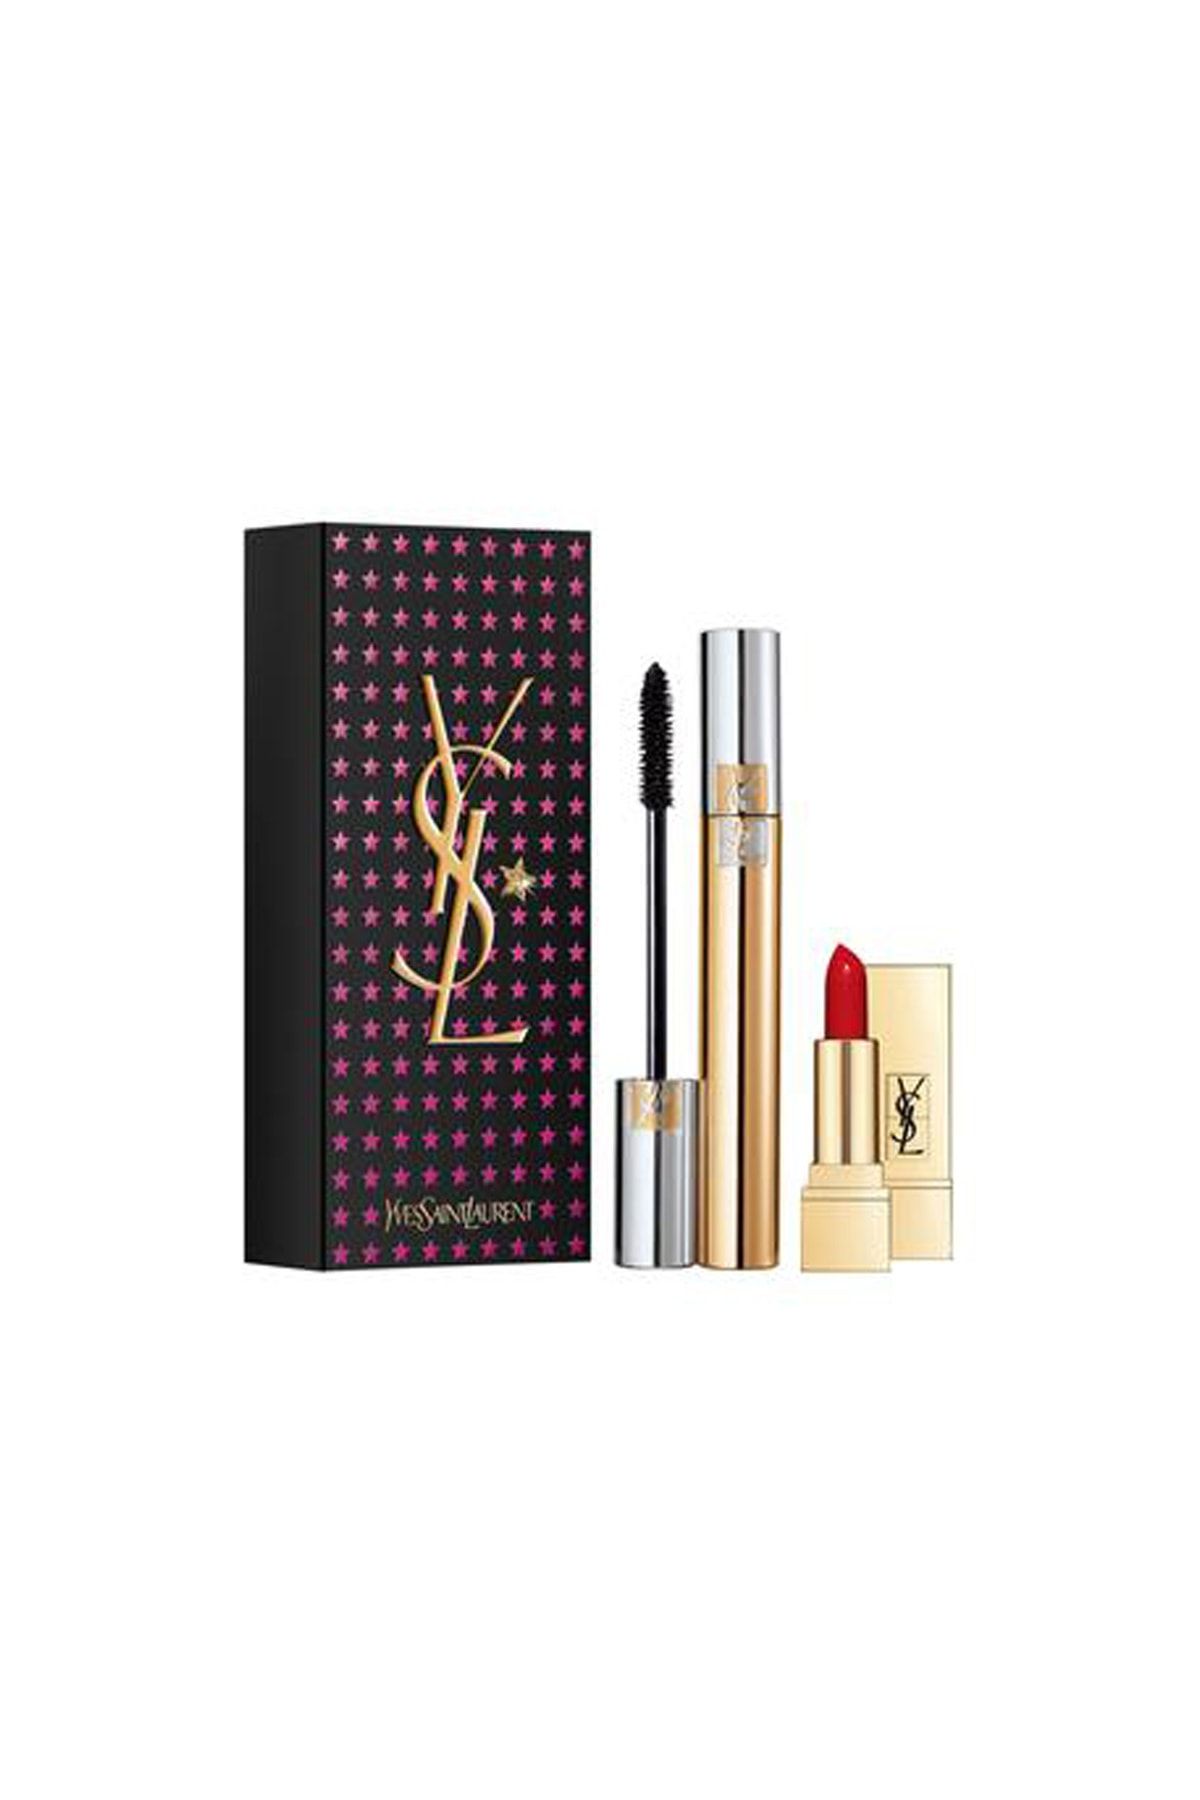 Yves Saint Laurent Mascara Volume Effet Faux Cils & Mini Rouge Pur Couture Set 3614272849198